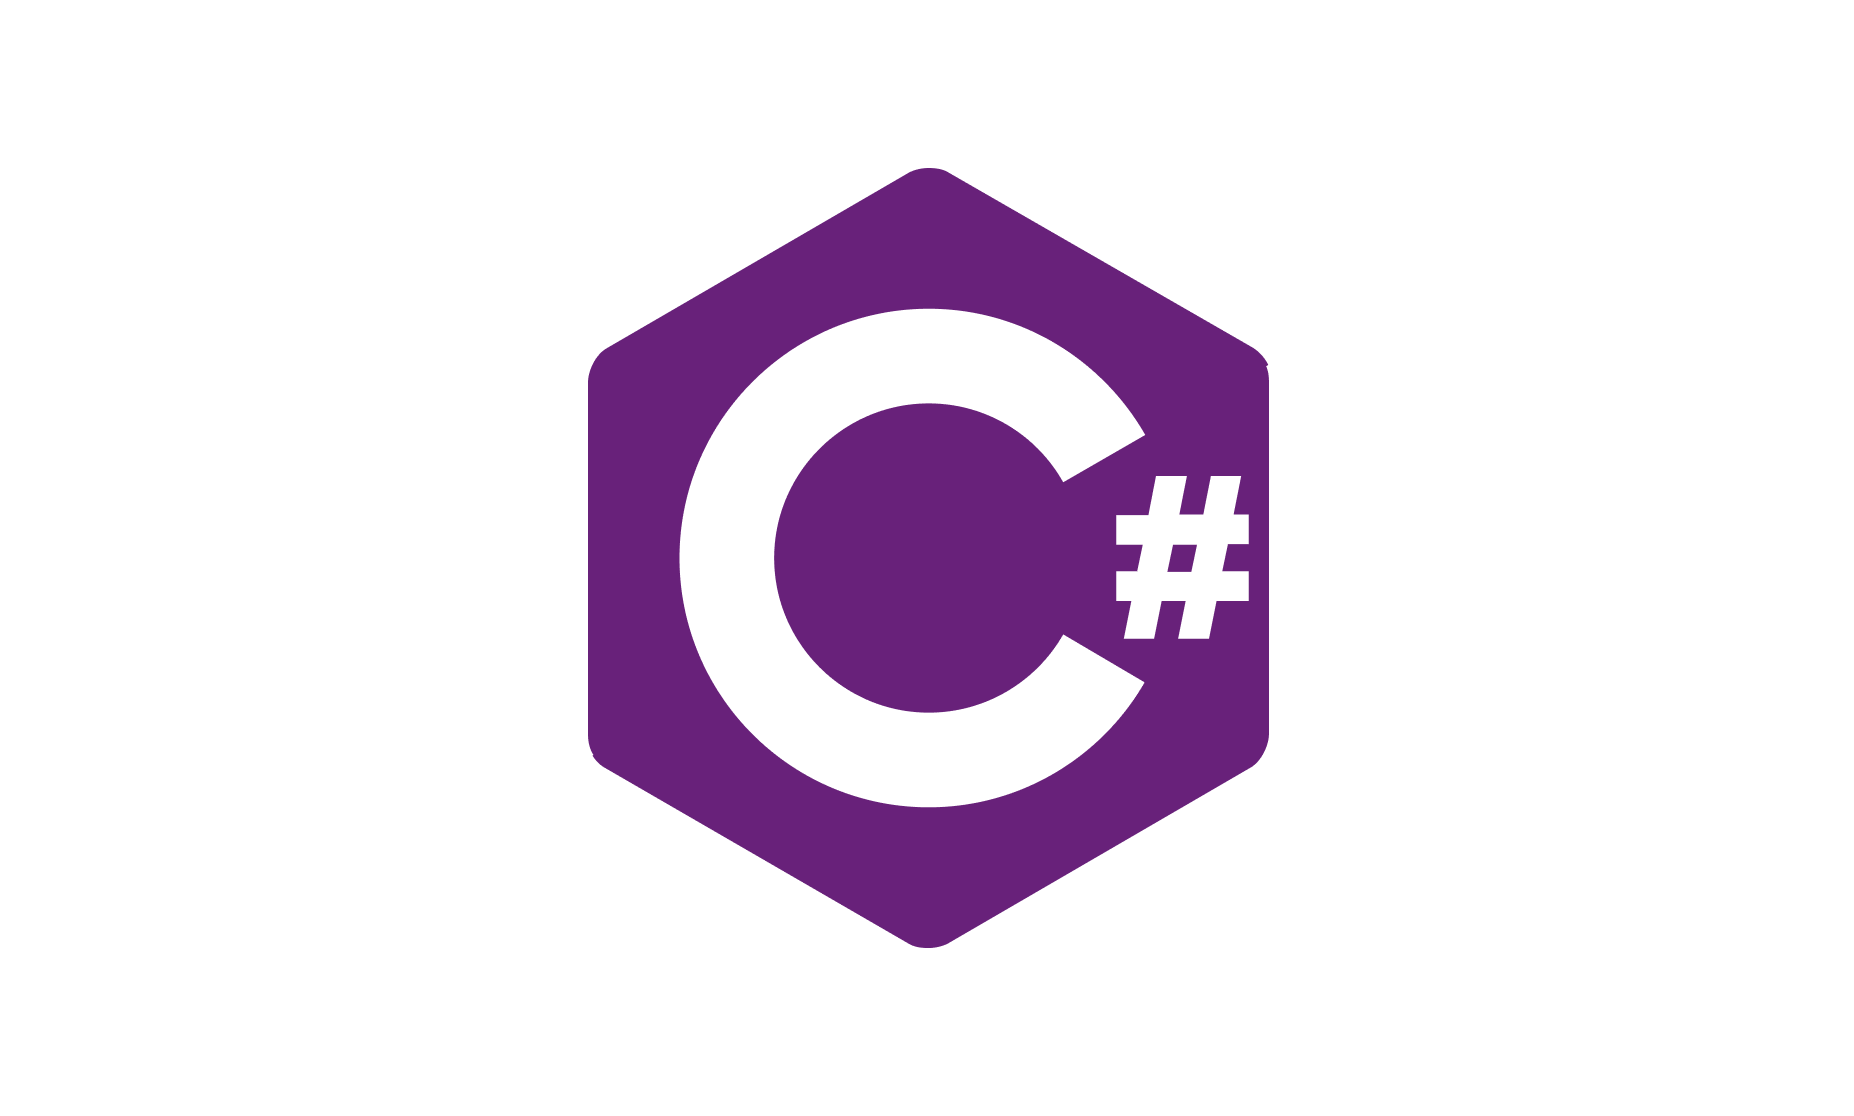 C Sharp Logo